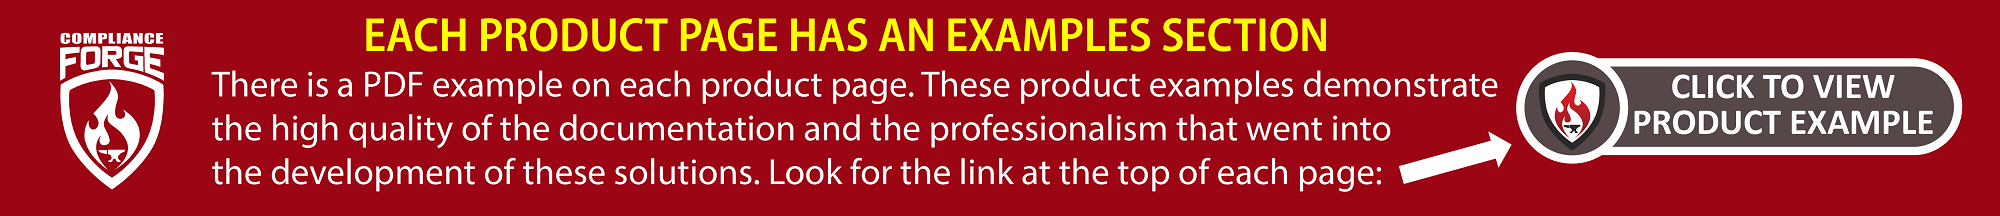 complianceforge example policies standards procedures